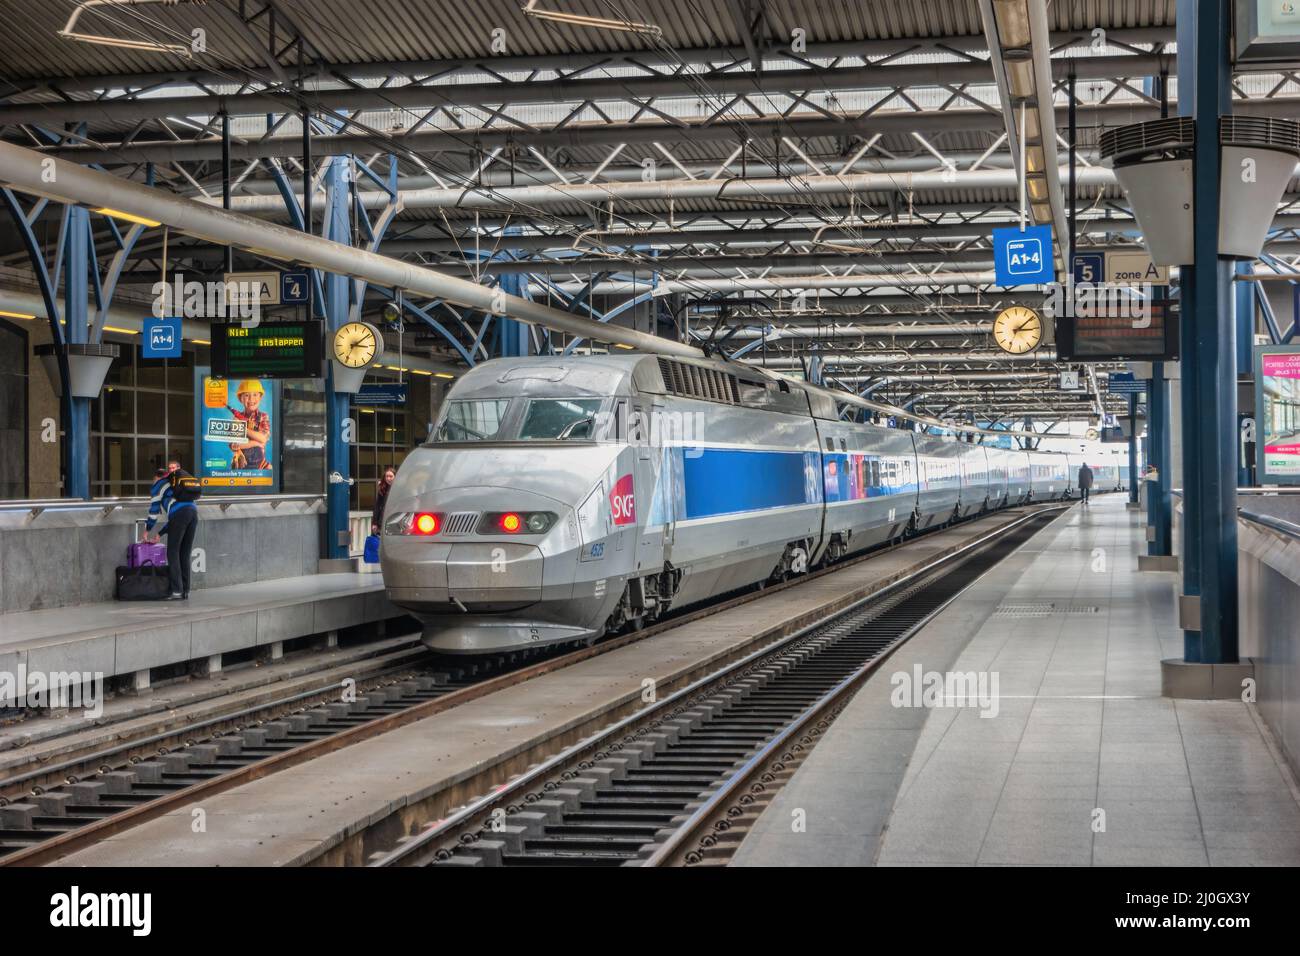 Bruselas, Bélgica - 8 de mayo de 2017: Tren de alta velocidad en la estación de tren sur de Bruselas (Bruxelles Midi) la estación más grande de la ciudad de Bruselas Foto de stock